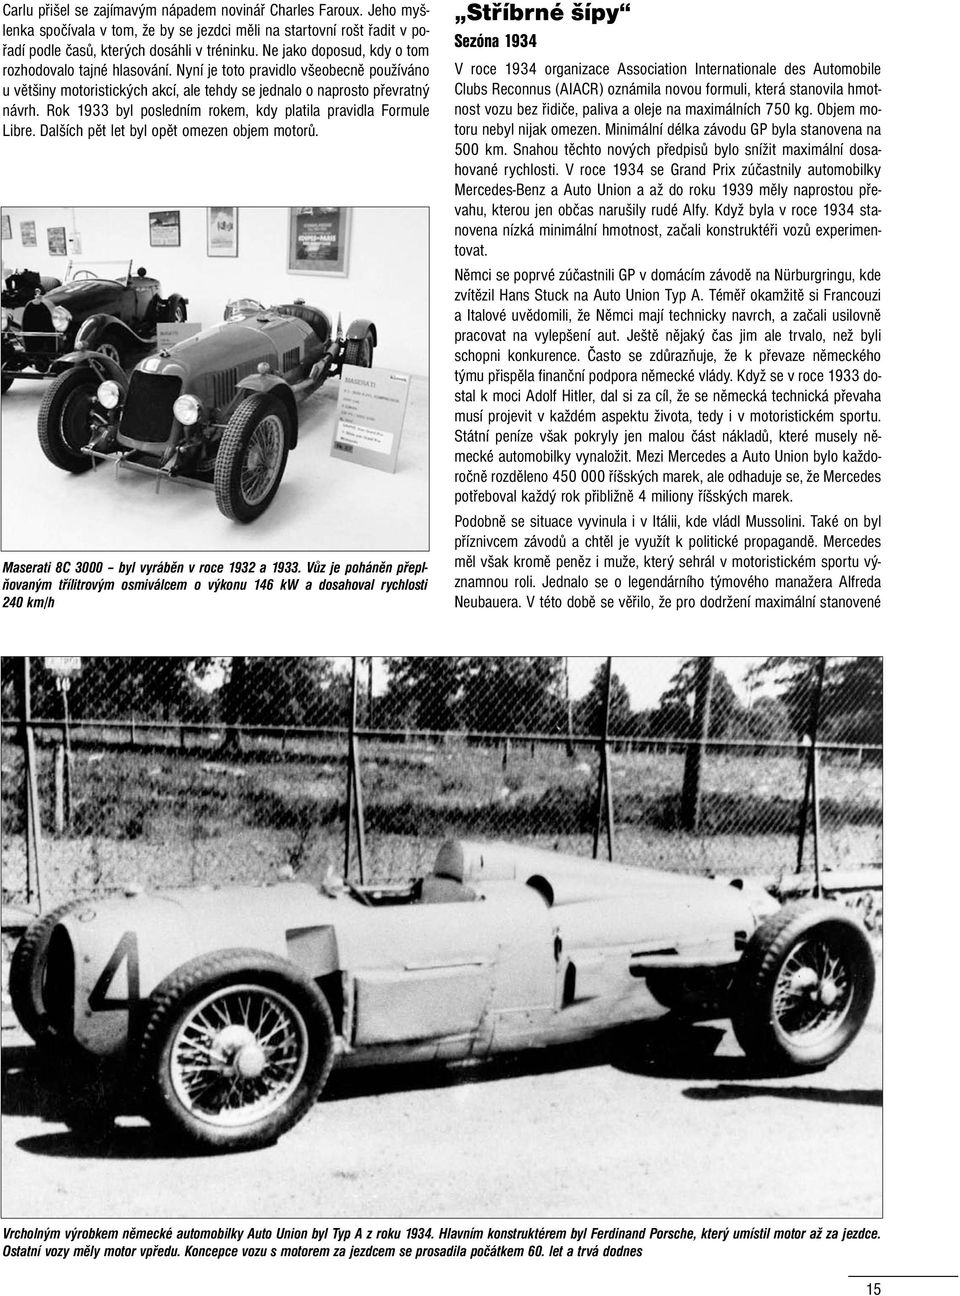 Rok 1933 byl posledním rokem, kdy platila pravidla Formule Libre. Dalších pět let byl opět omezen objem motorů. Maserati 8C 3000 byl vyráběn v roce 1932 a 1933.